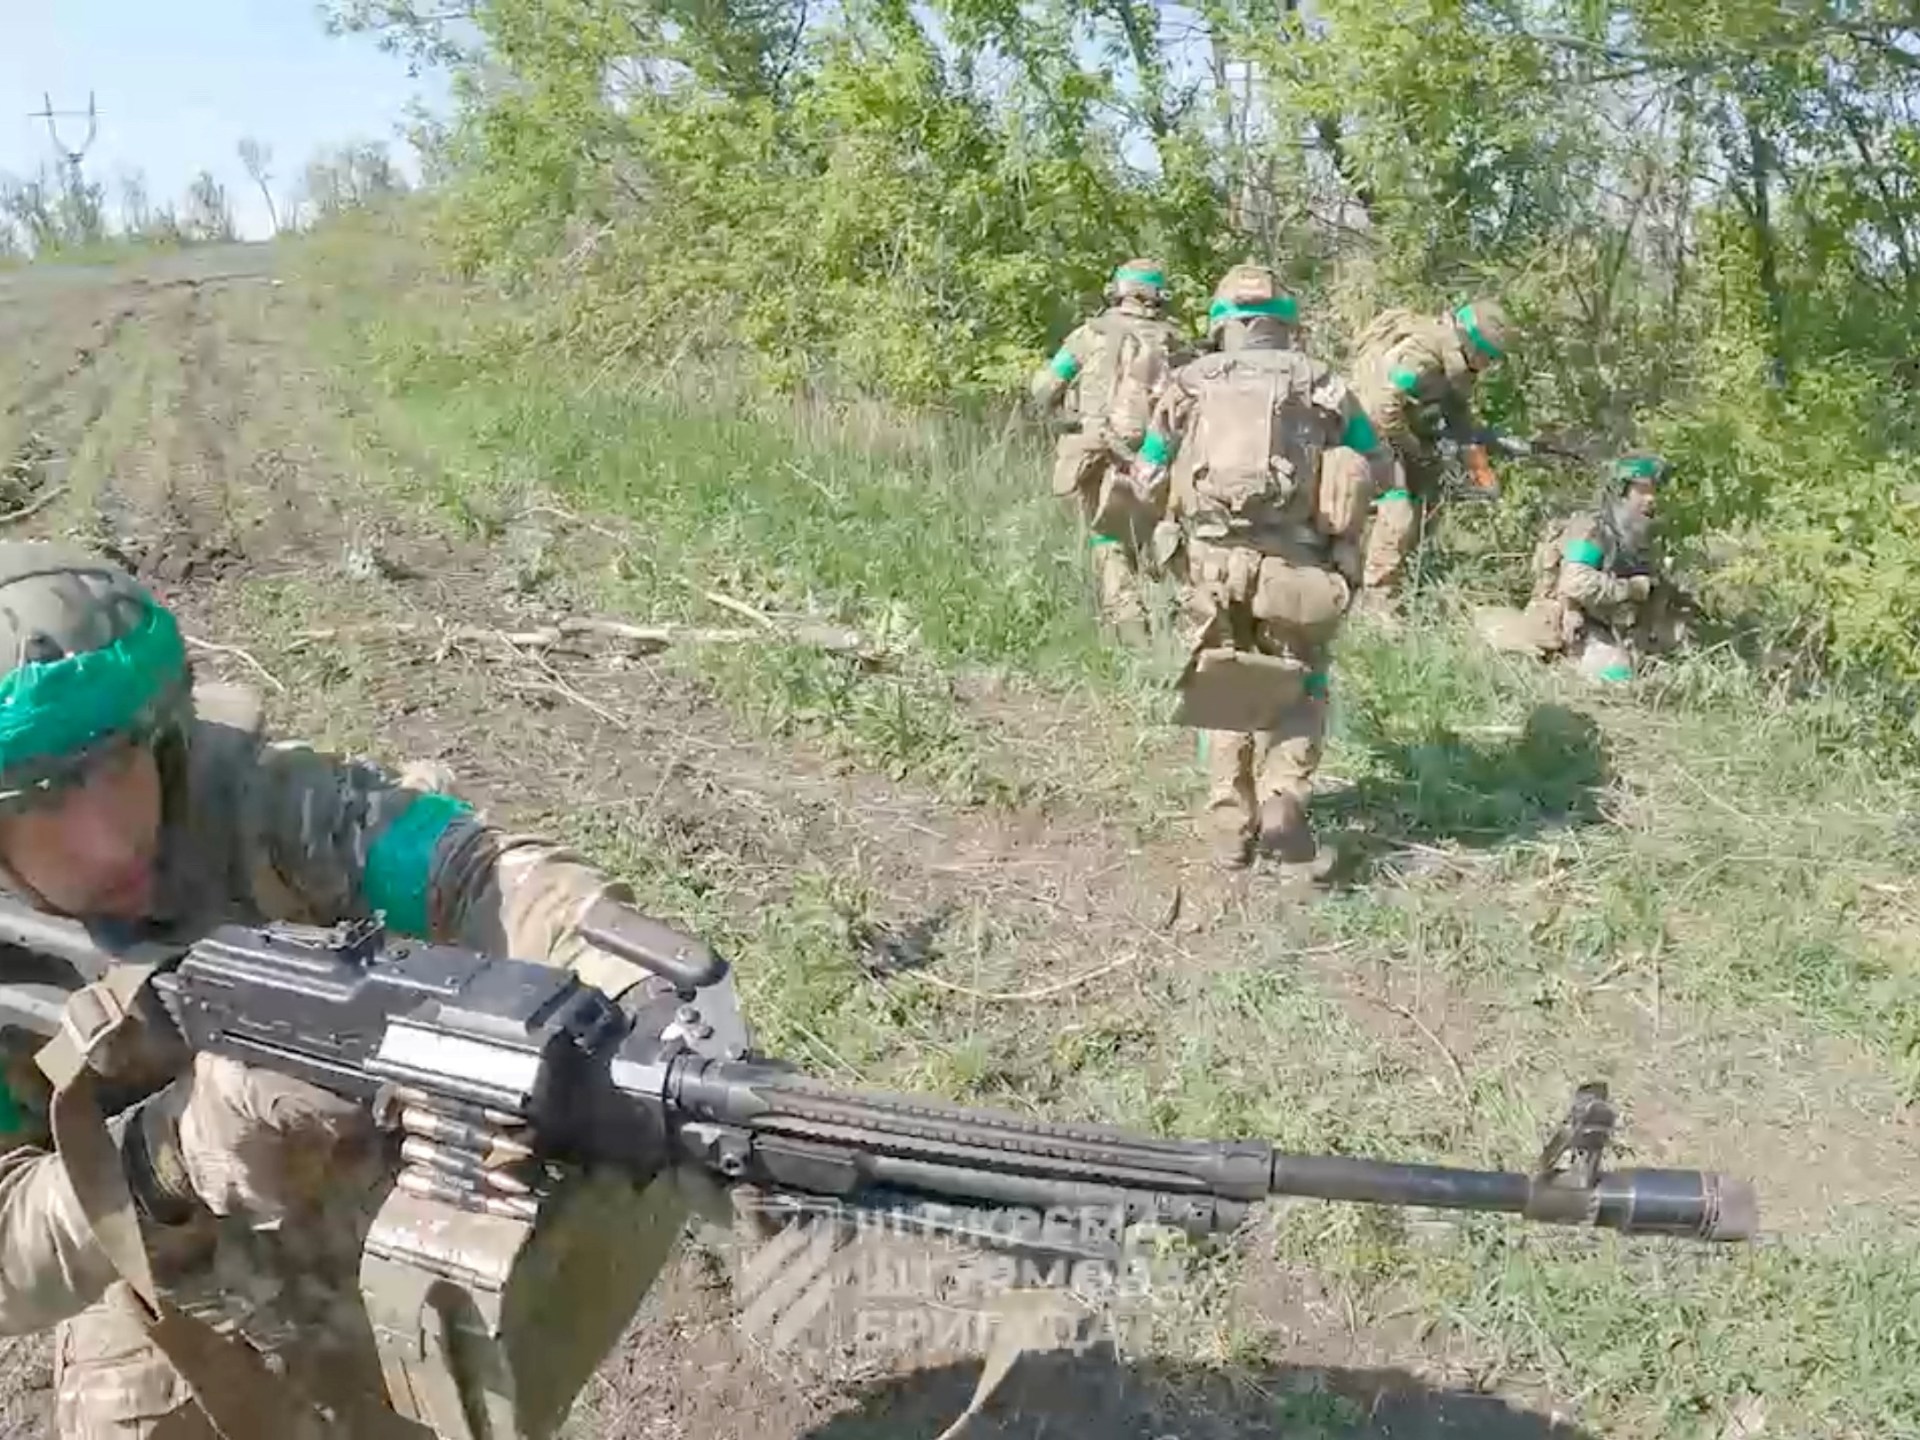 Ukraine counteroffensive against Russia under way: think tank